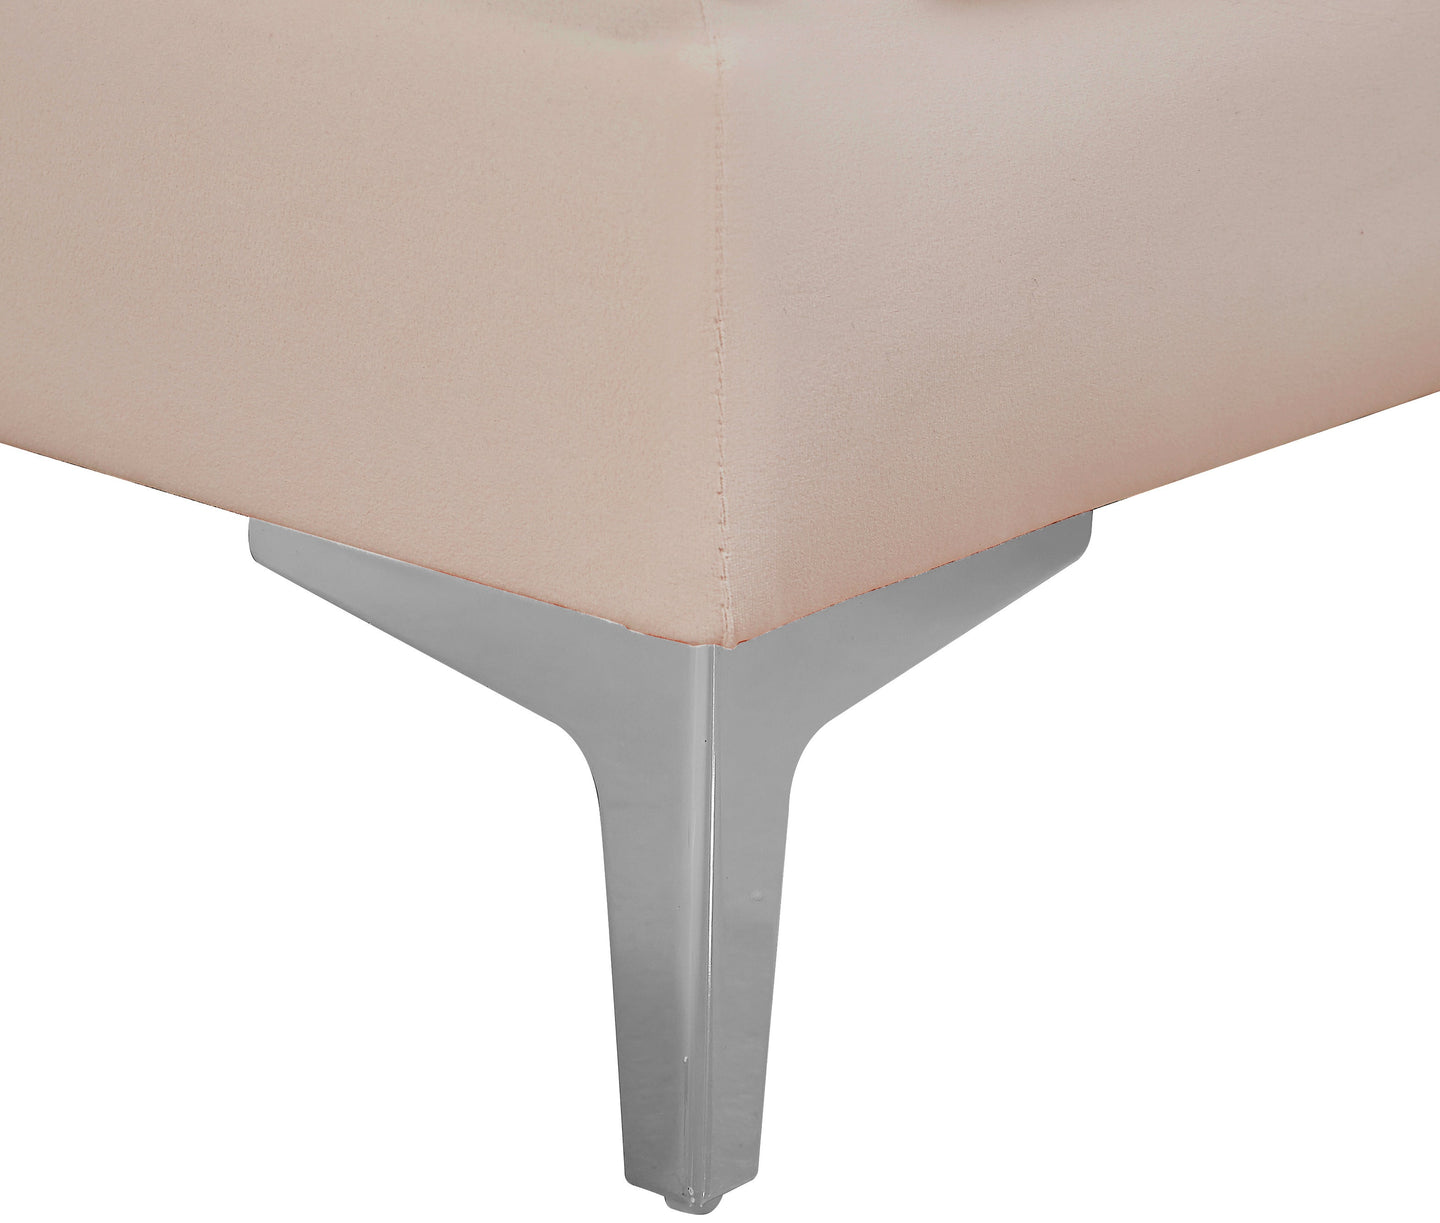 Alina Velvet Corner Chair - Furniture Depot (7679004541176)